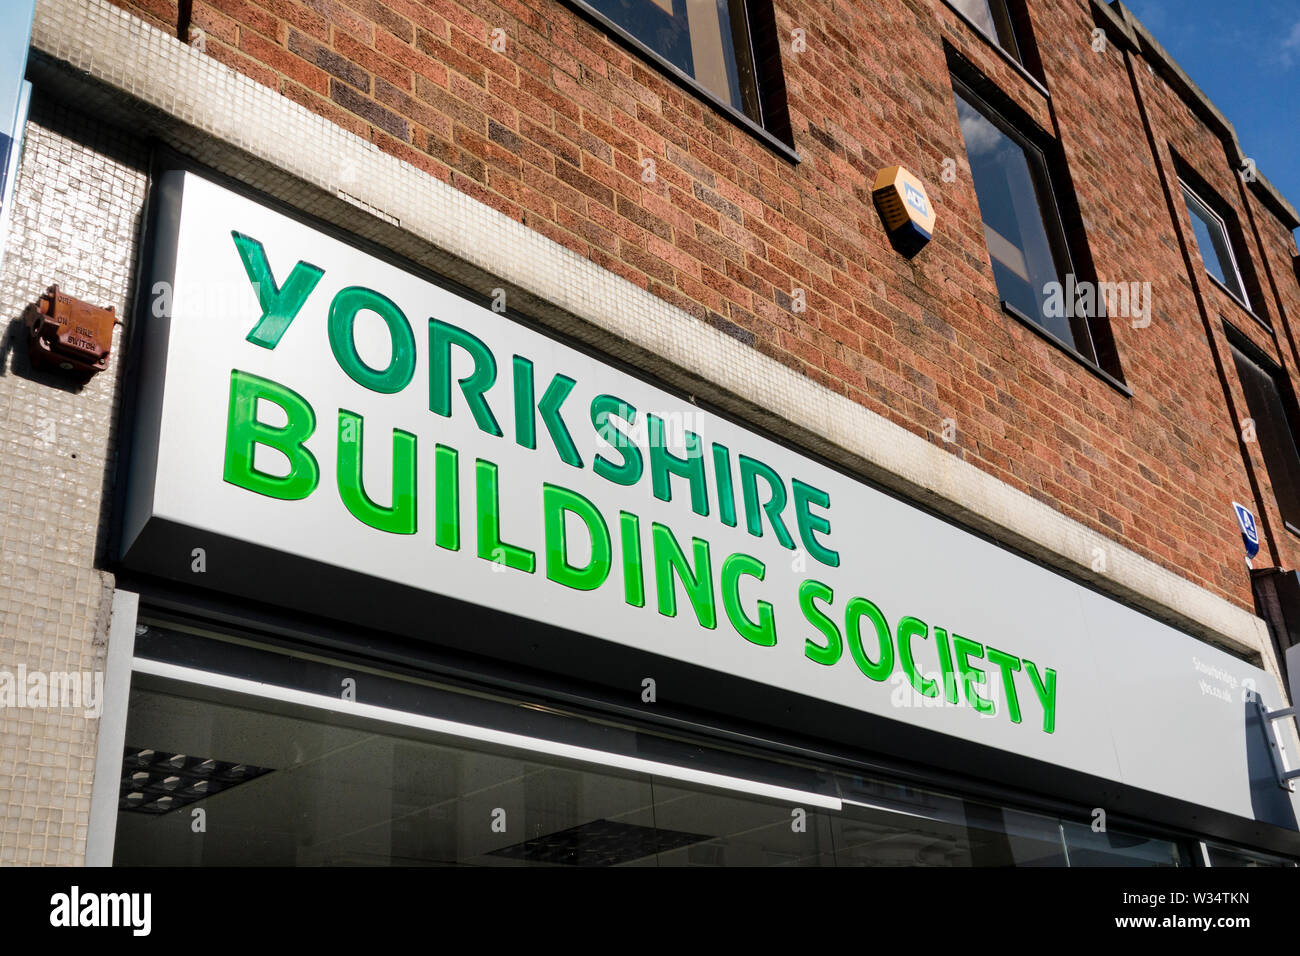 Yorkshire Building Society, Stourbridge, West Midlands, UK Stock Photo